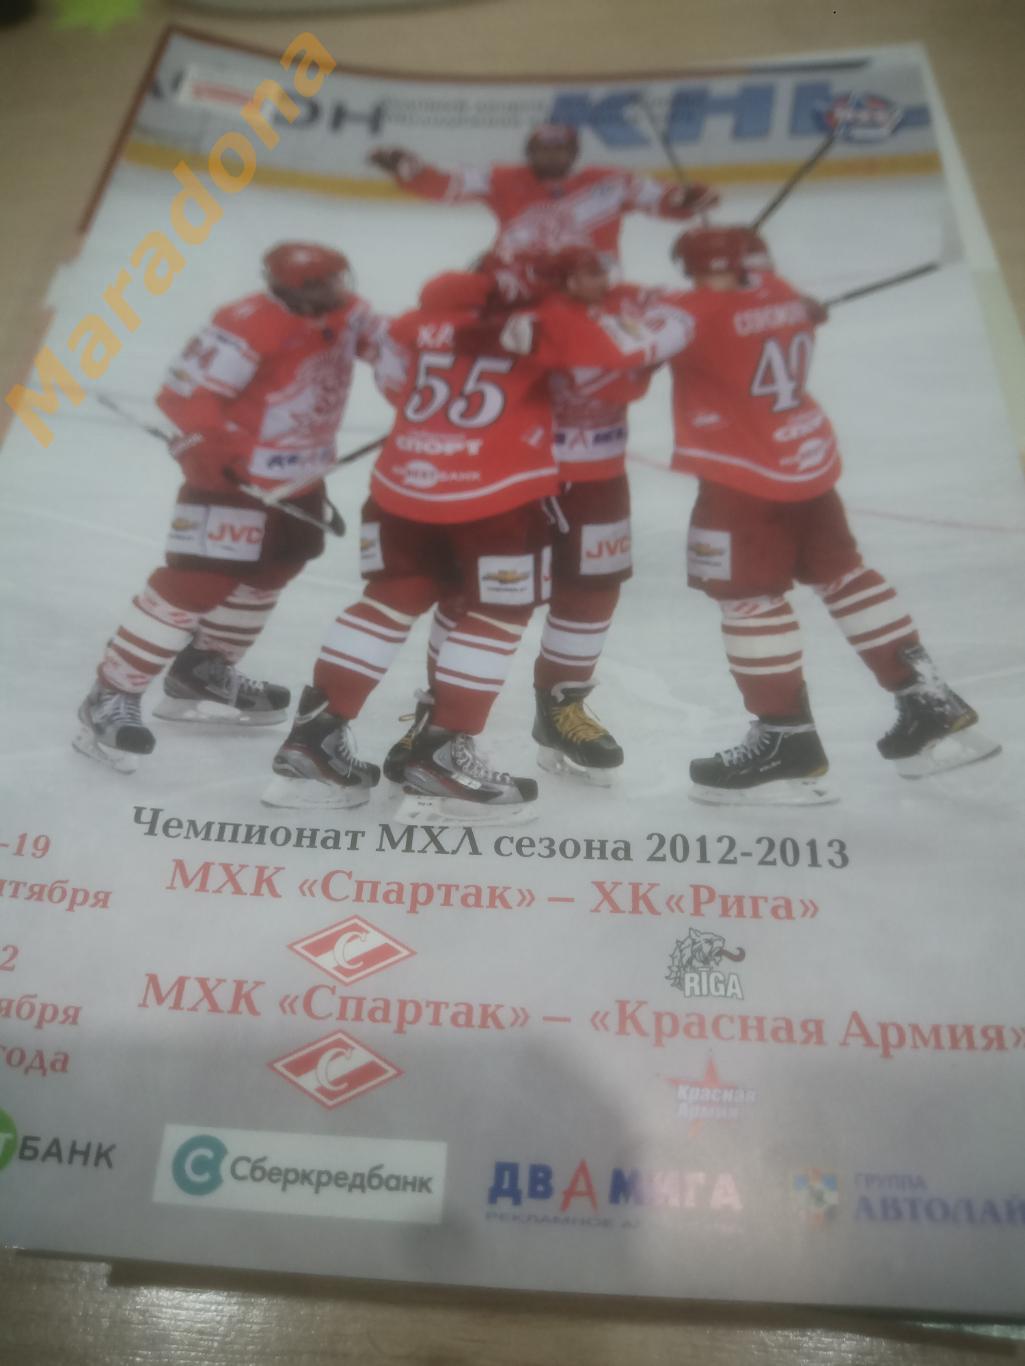 Спартак Москва - Рига, Динамо Санкт-Петербург 2012